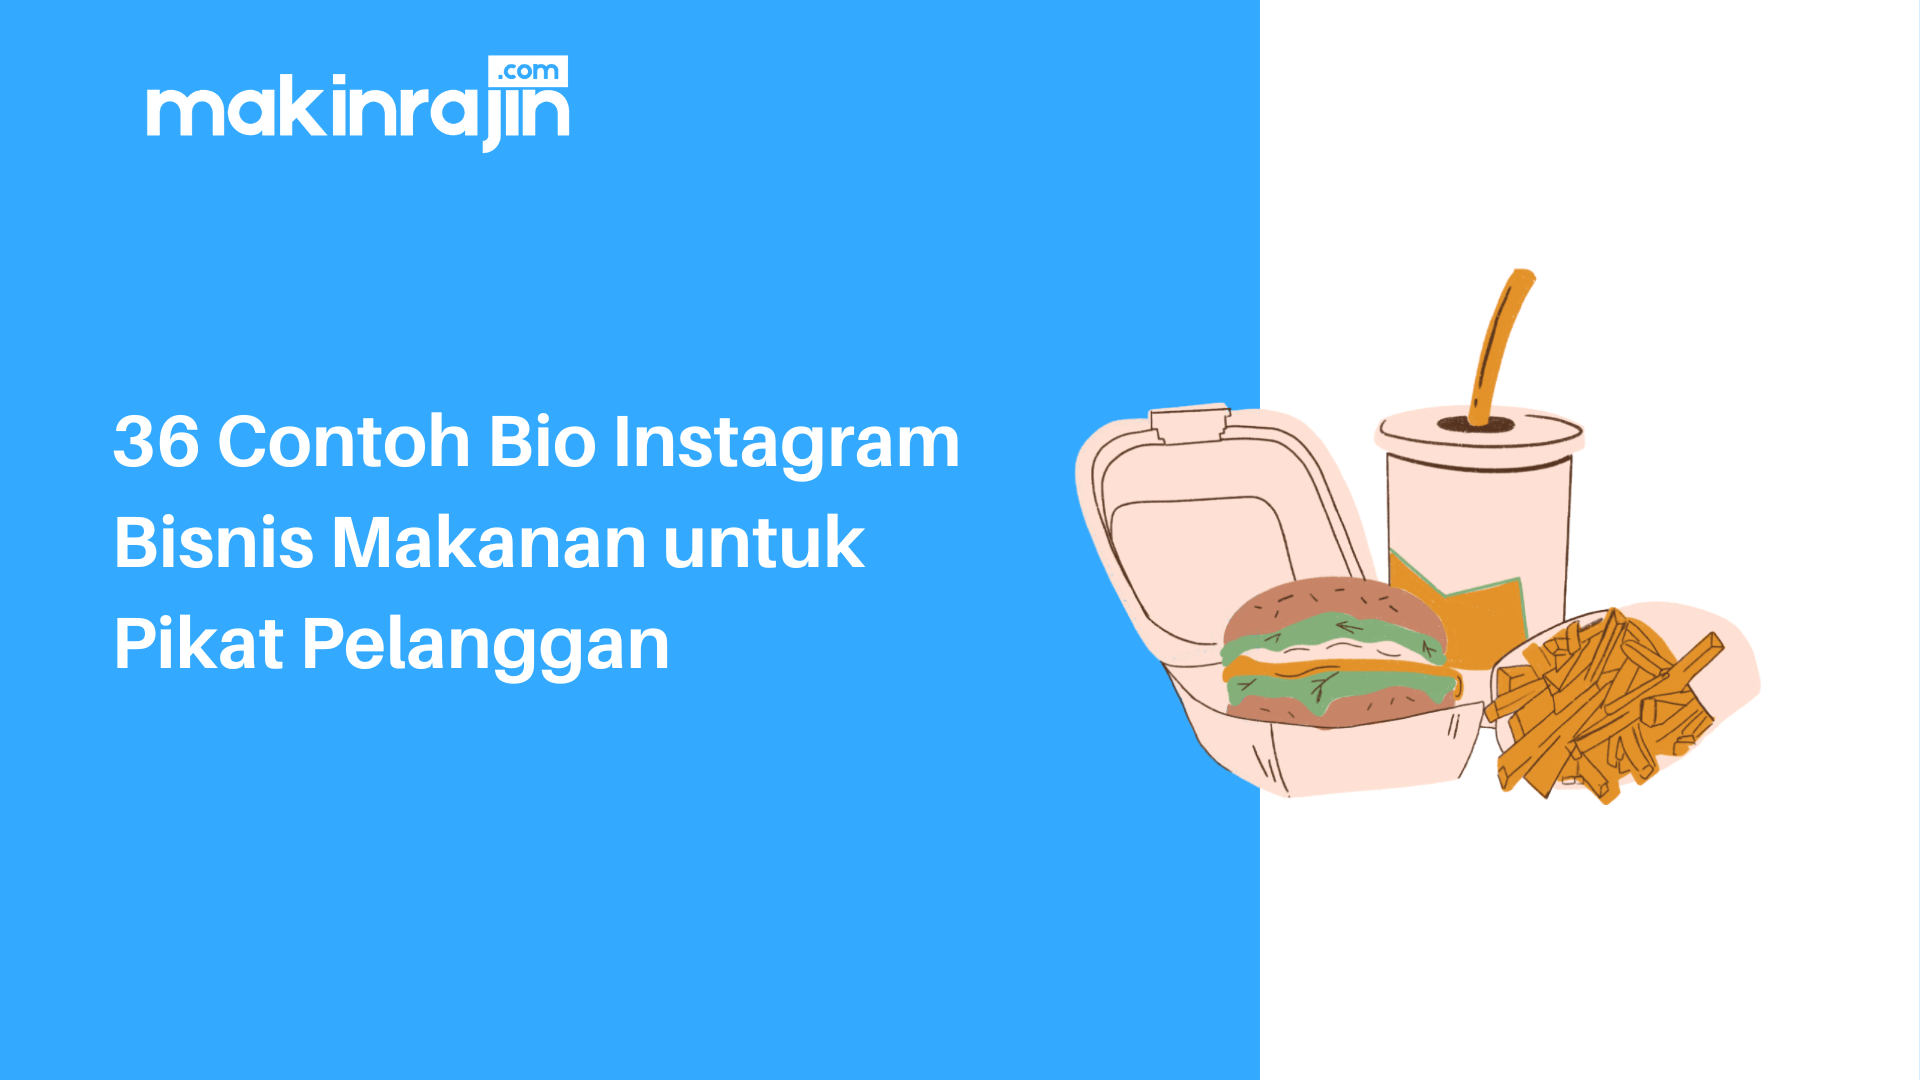 36 Contoh Bio Instagram Bisnis Makanan untuk Pikat Pelanggan